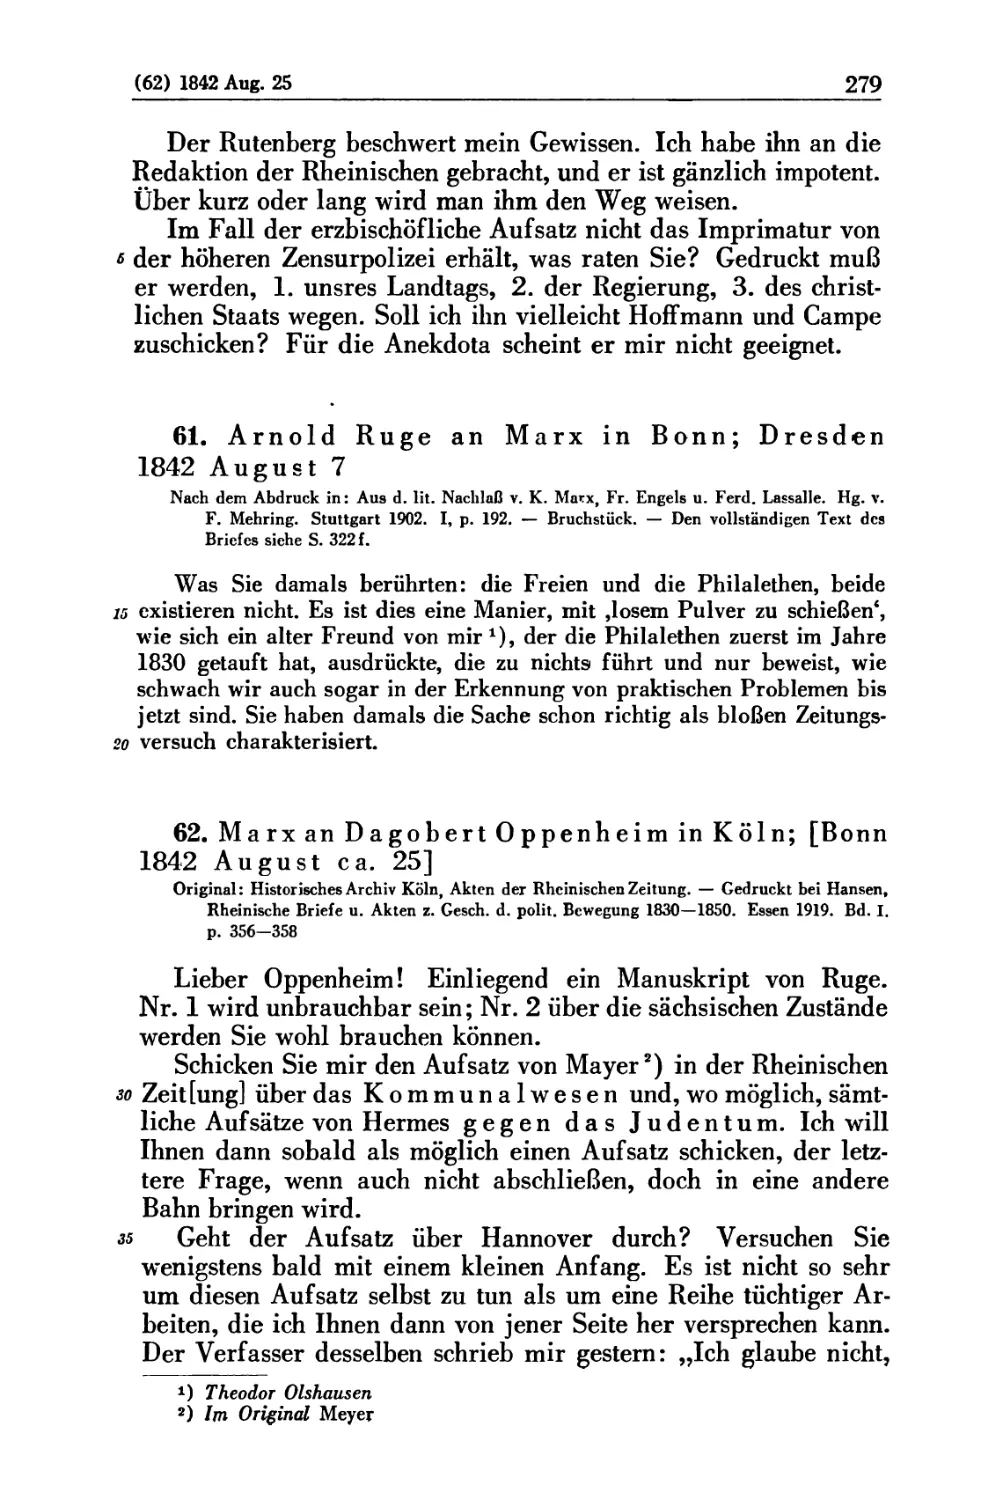 61. Arnold Ruge an Marx in Bonn; Dresden 1842 August 7
62. Marx an Dagobert Oppenheim in Köln; [Bonn 1842 August ca. 25]